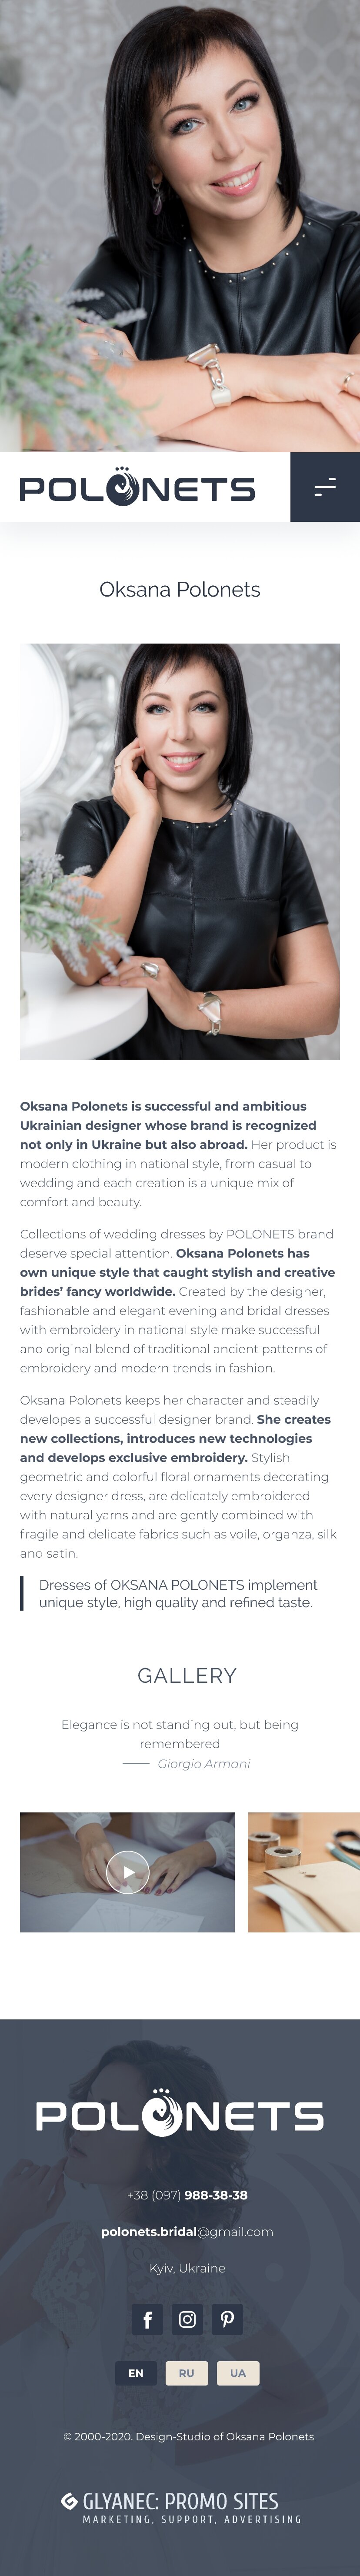 ™ Глянець, студія веб-дизайну — Промо-сайт для дизайн-студії Оксани Полонець_25